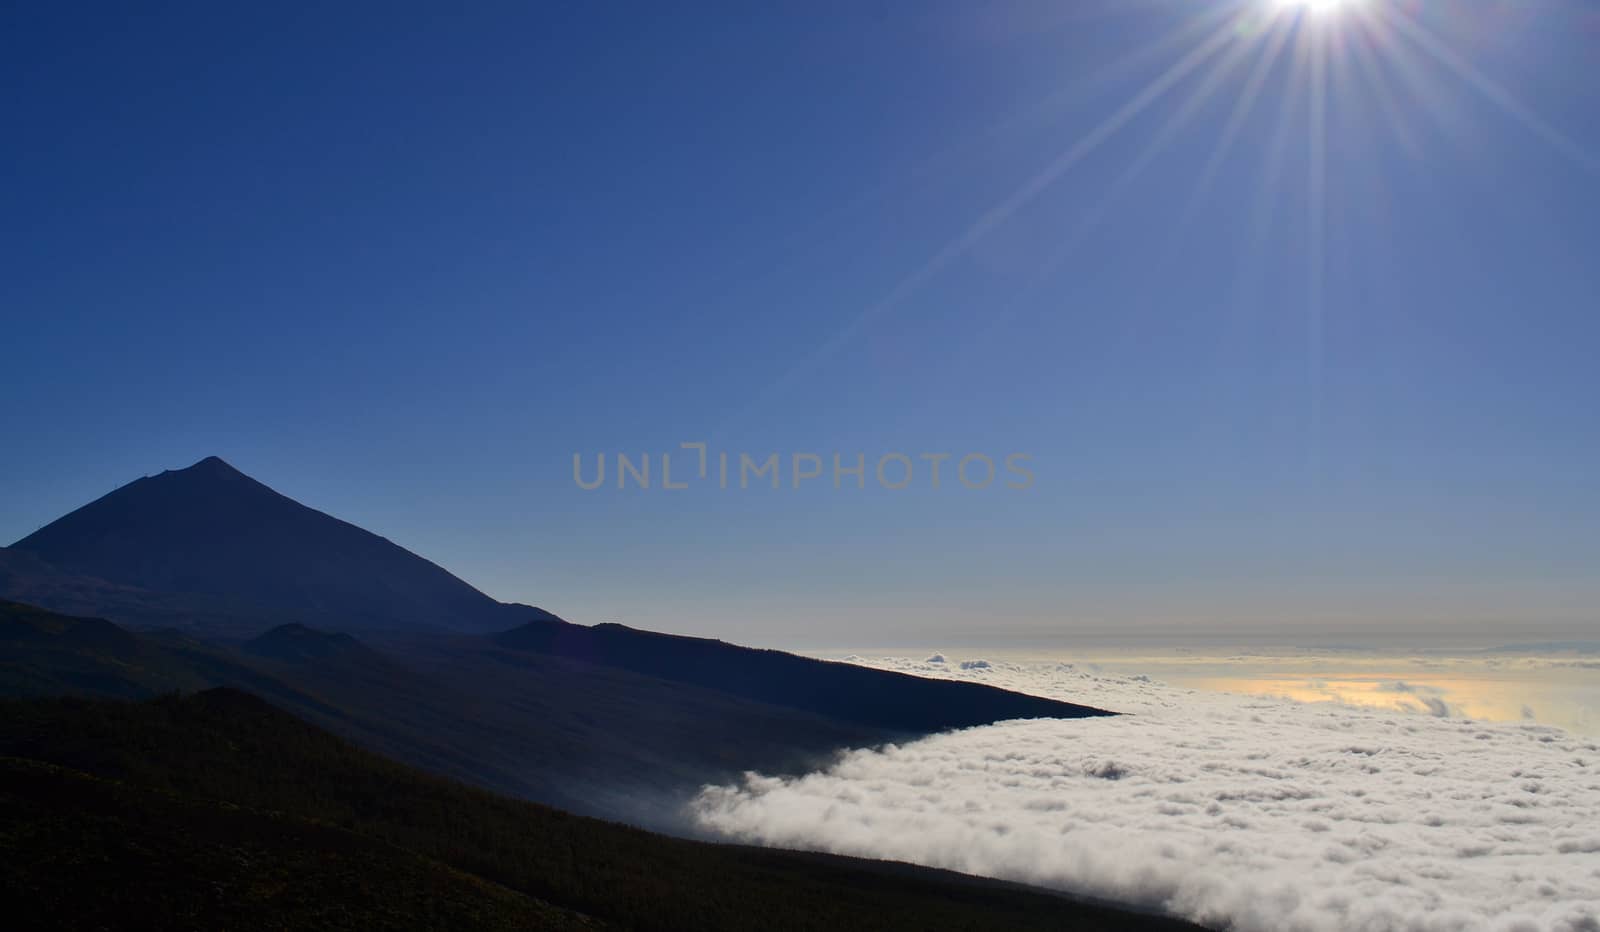 Teide Peak and clouds by hibrida13